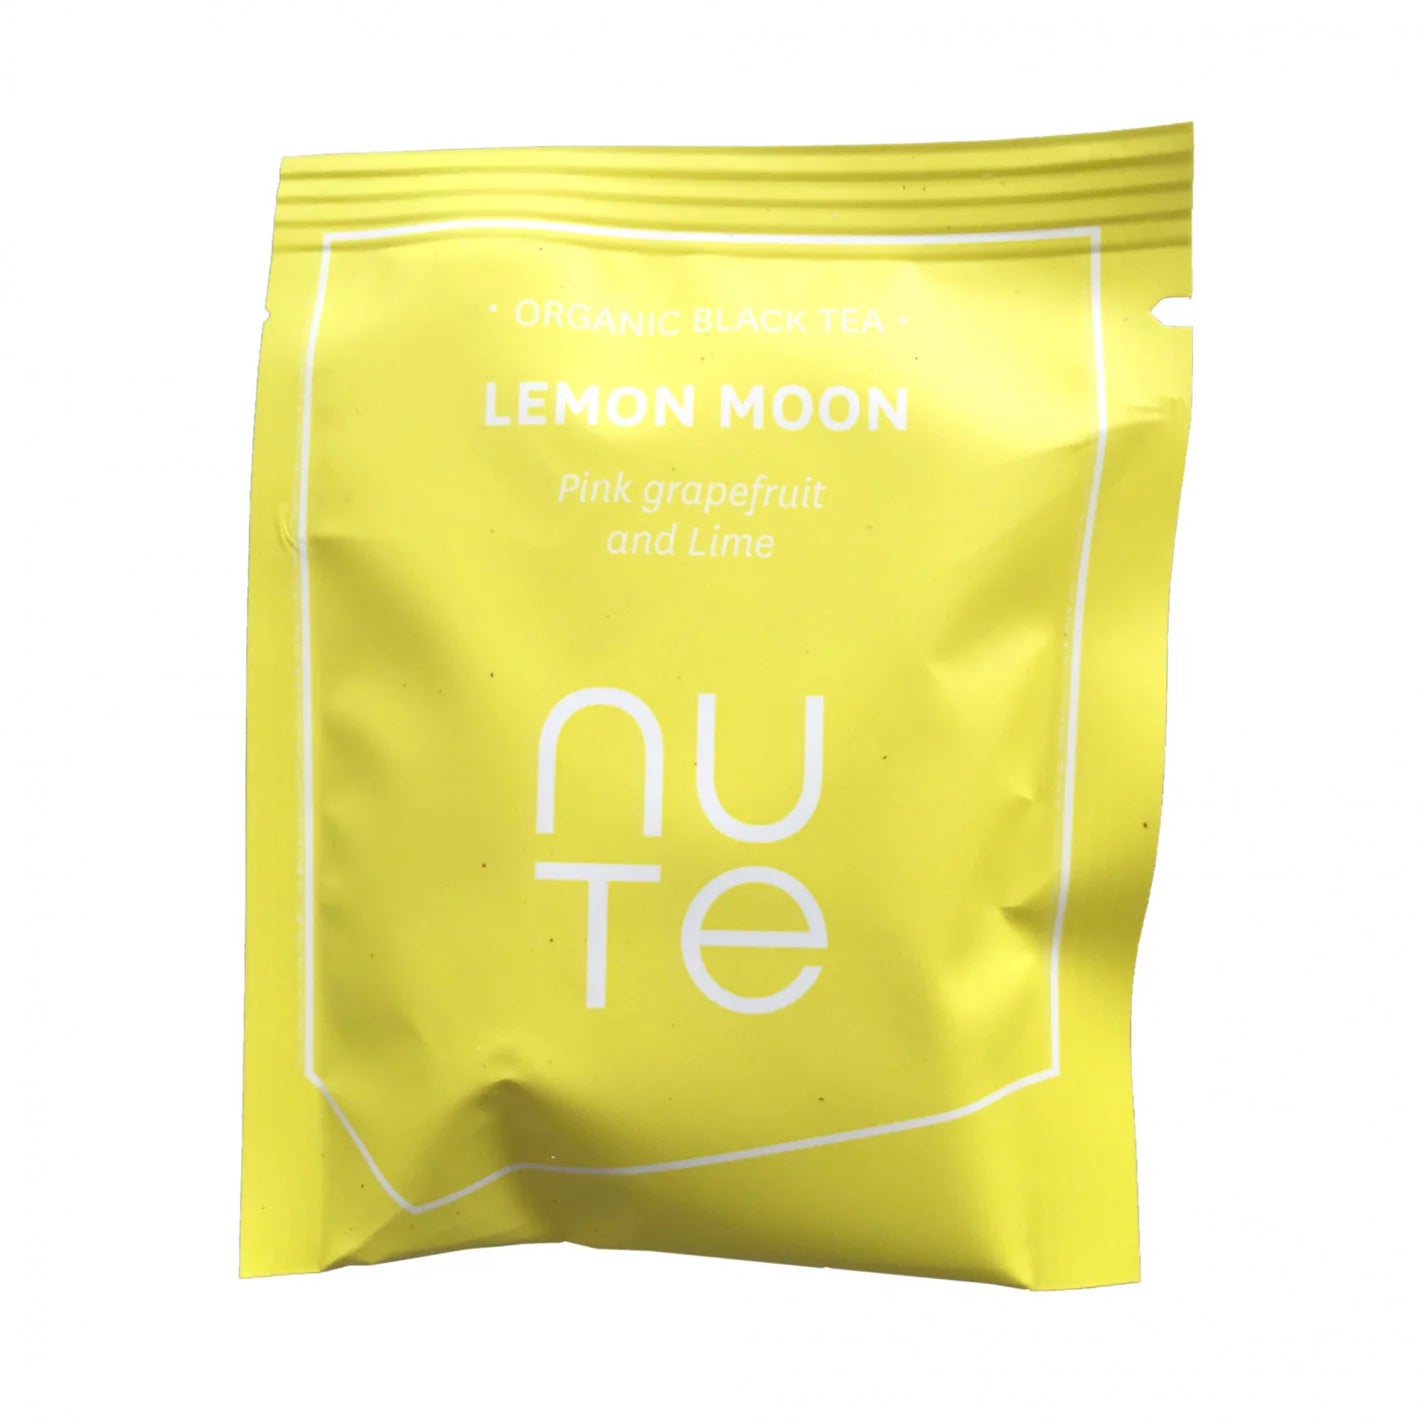 Lemon Moon tebreve fra NUTE